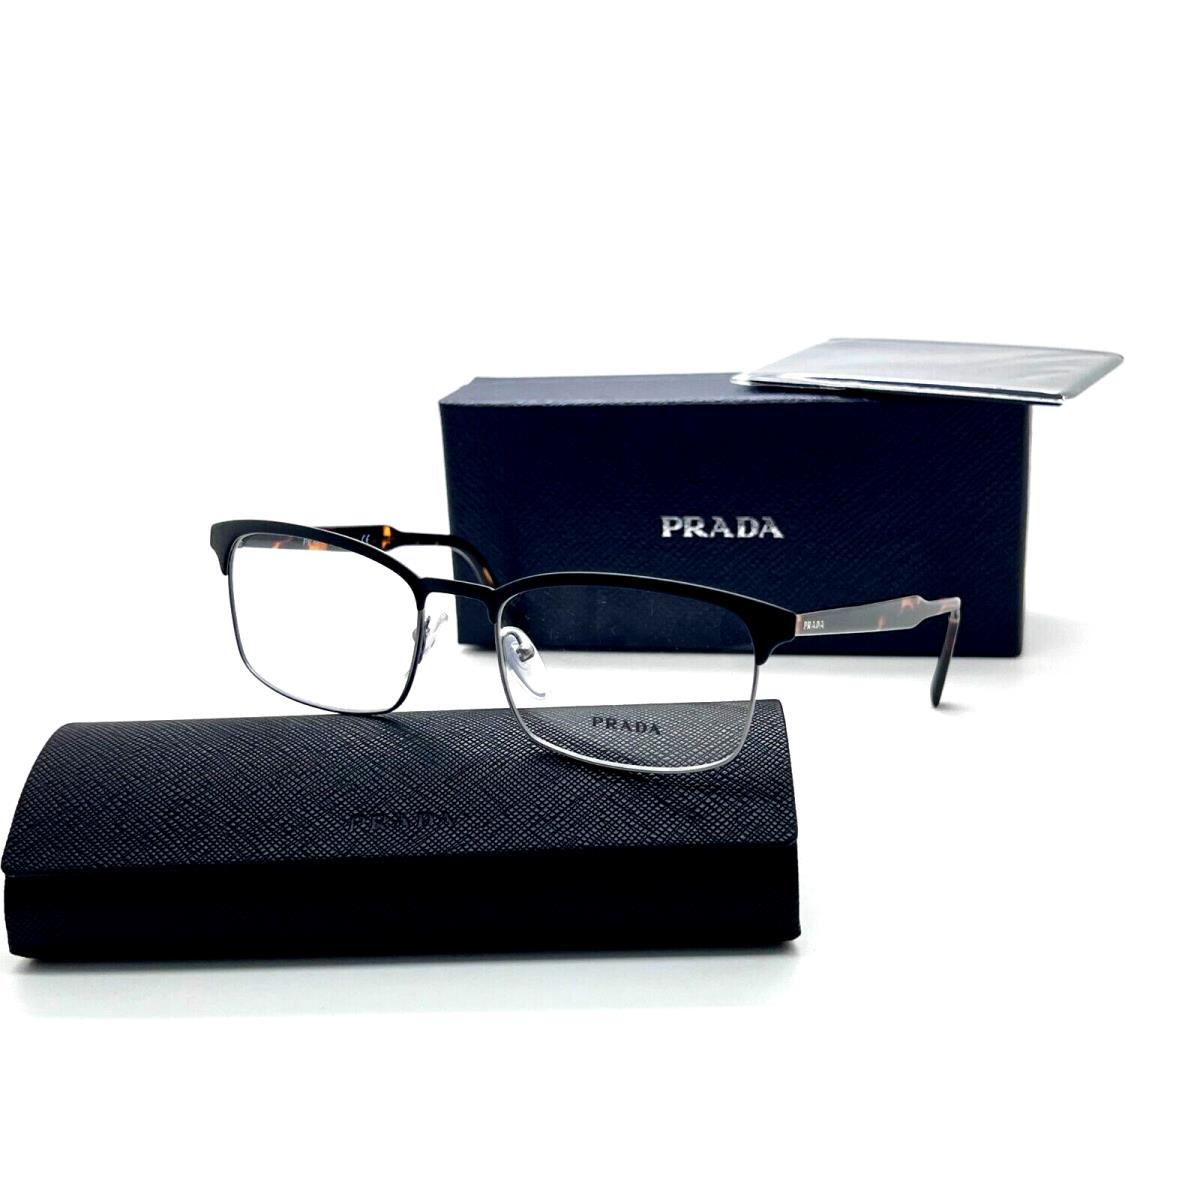 Prada Eyeglasses Optical Frame Vpr 54W 02G Matte Black/gun 54-18-145MM Italy